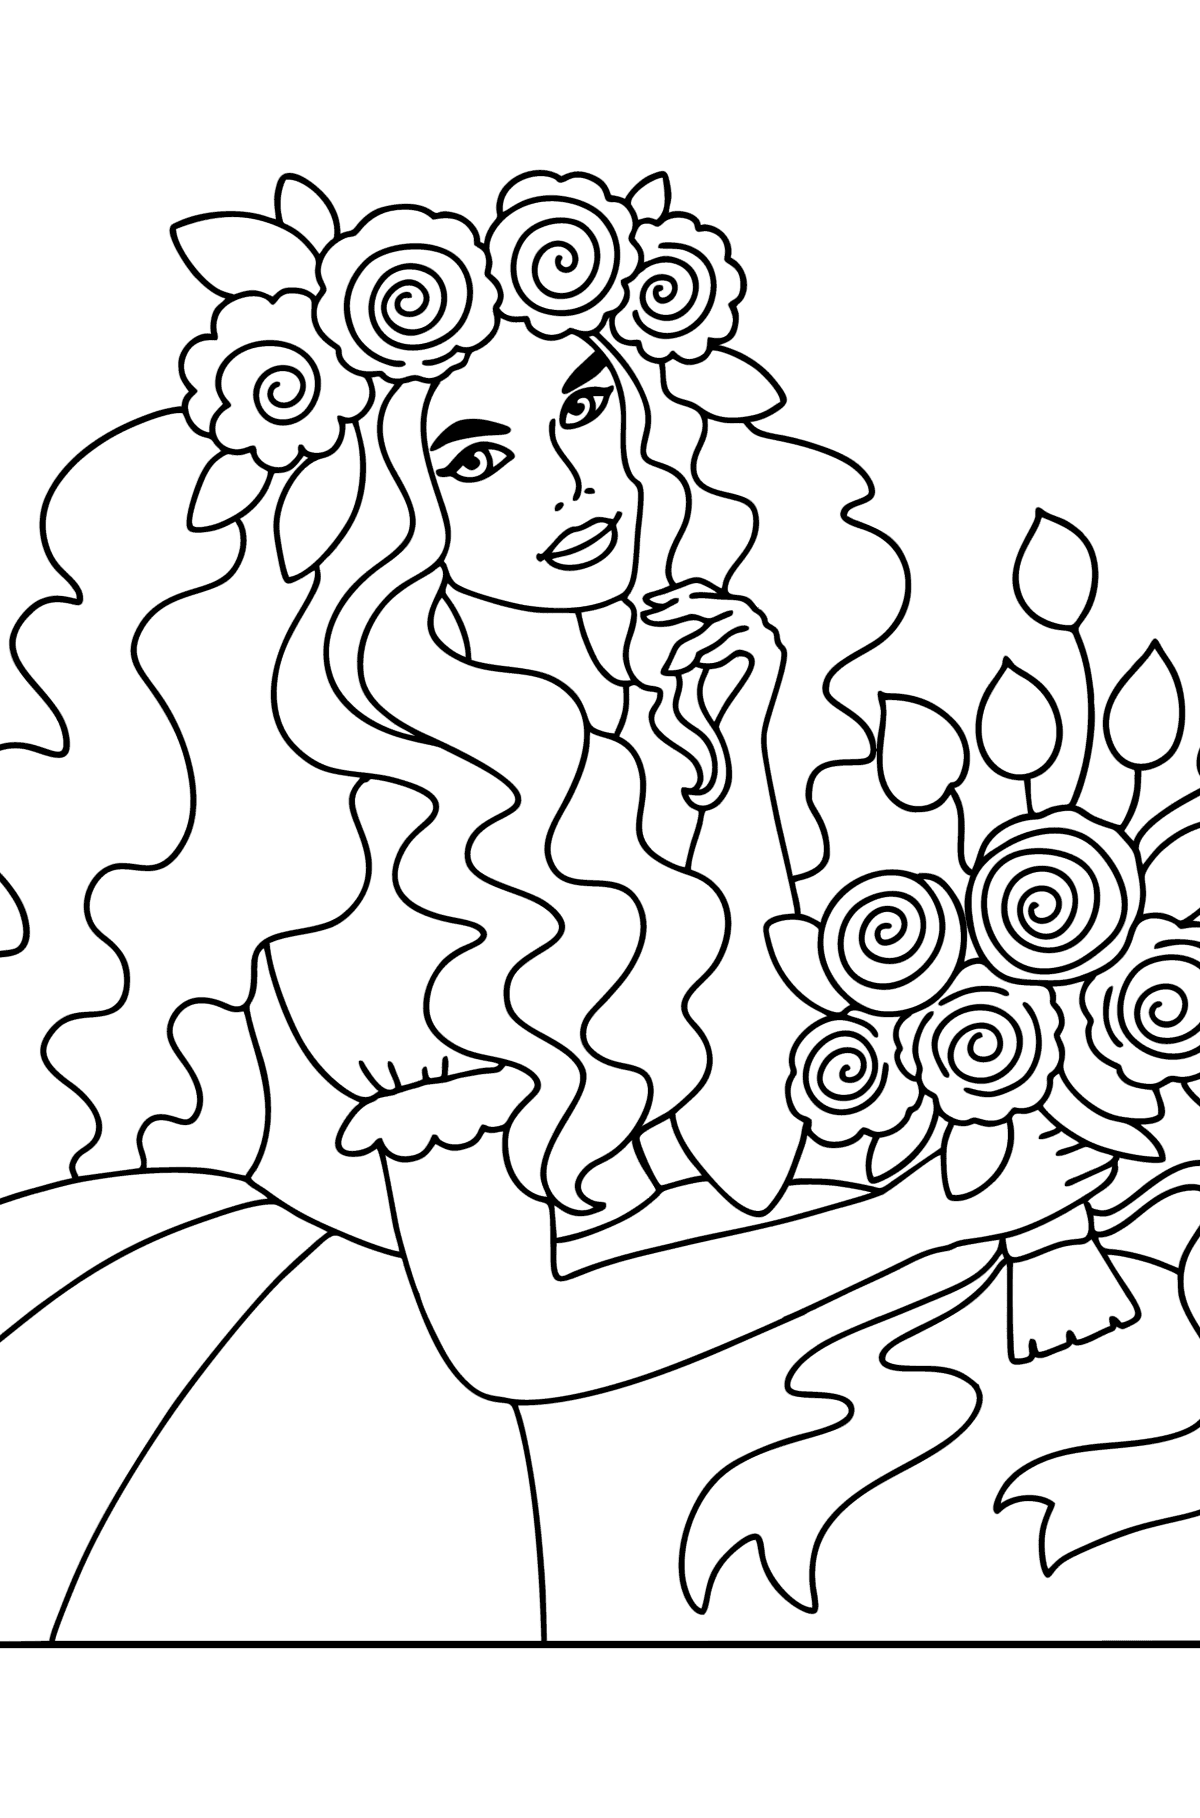 Раскраска Цветочная принцесса - Картинки для Детей